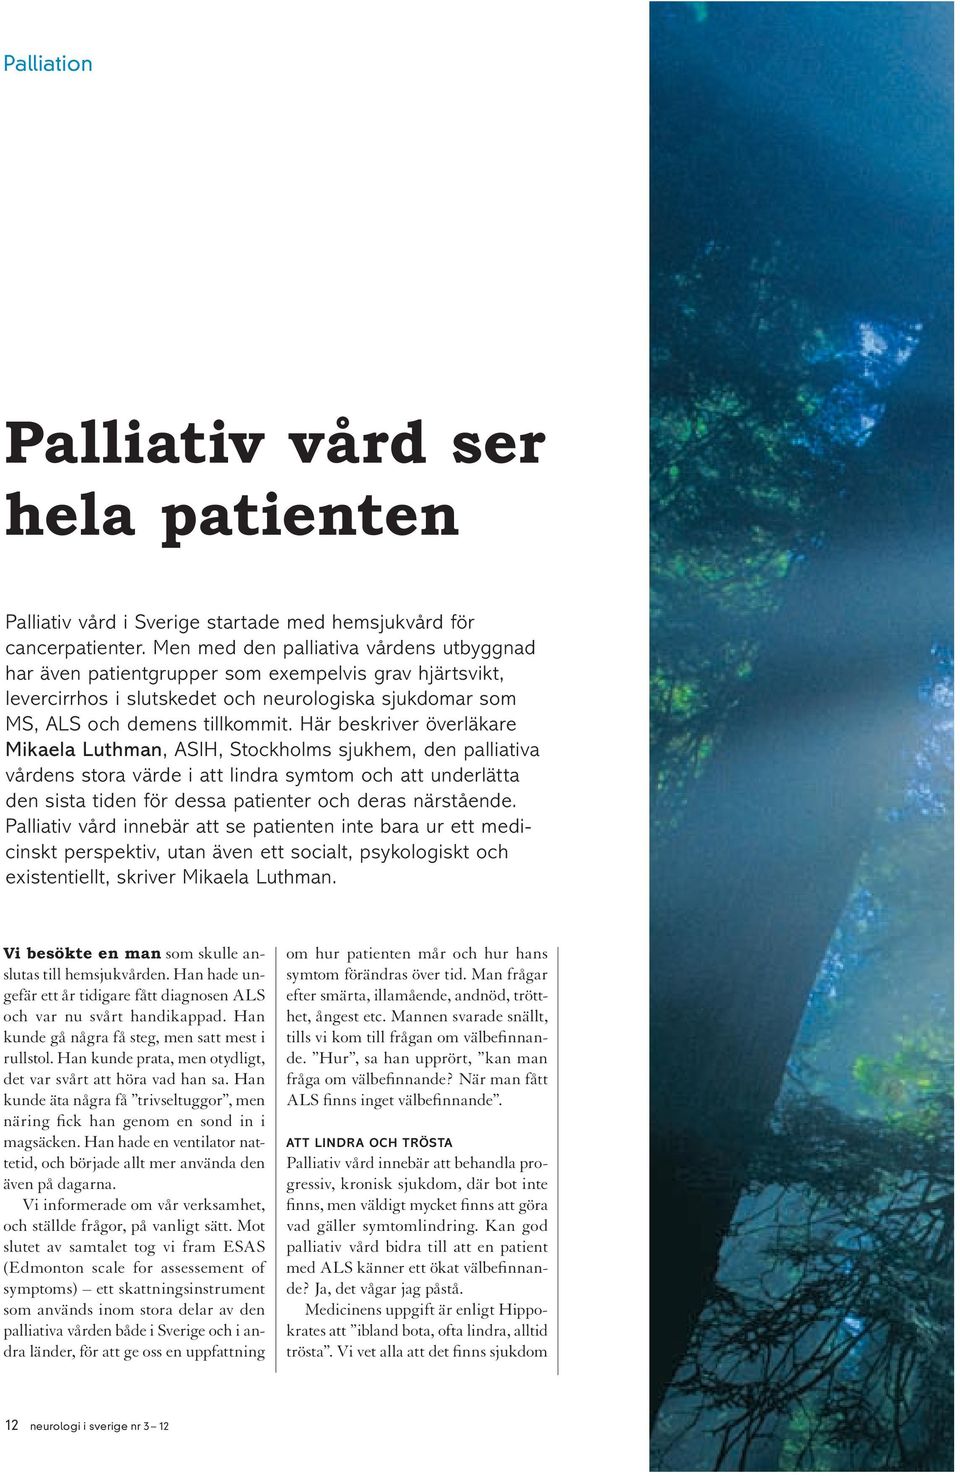 Här beskriver överläkare Mikaela Luthman, ASIH, Stockholms sjukhem, den palliativa vårdens stora värde i att lindra symtom och att underlätta den sista tiden för dessa patienter och deras närstående.